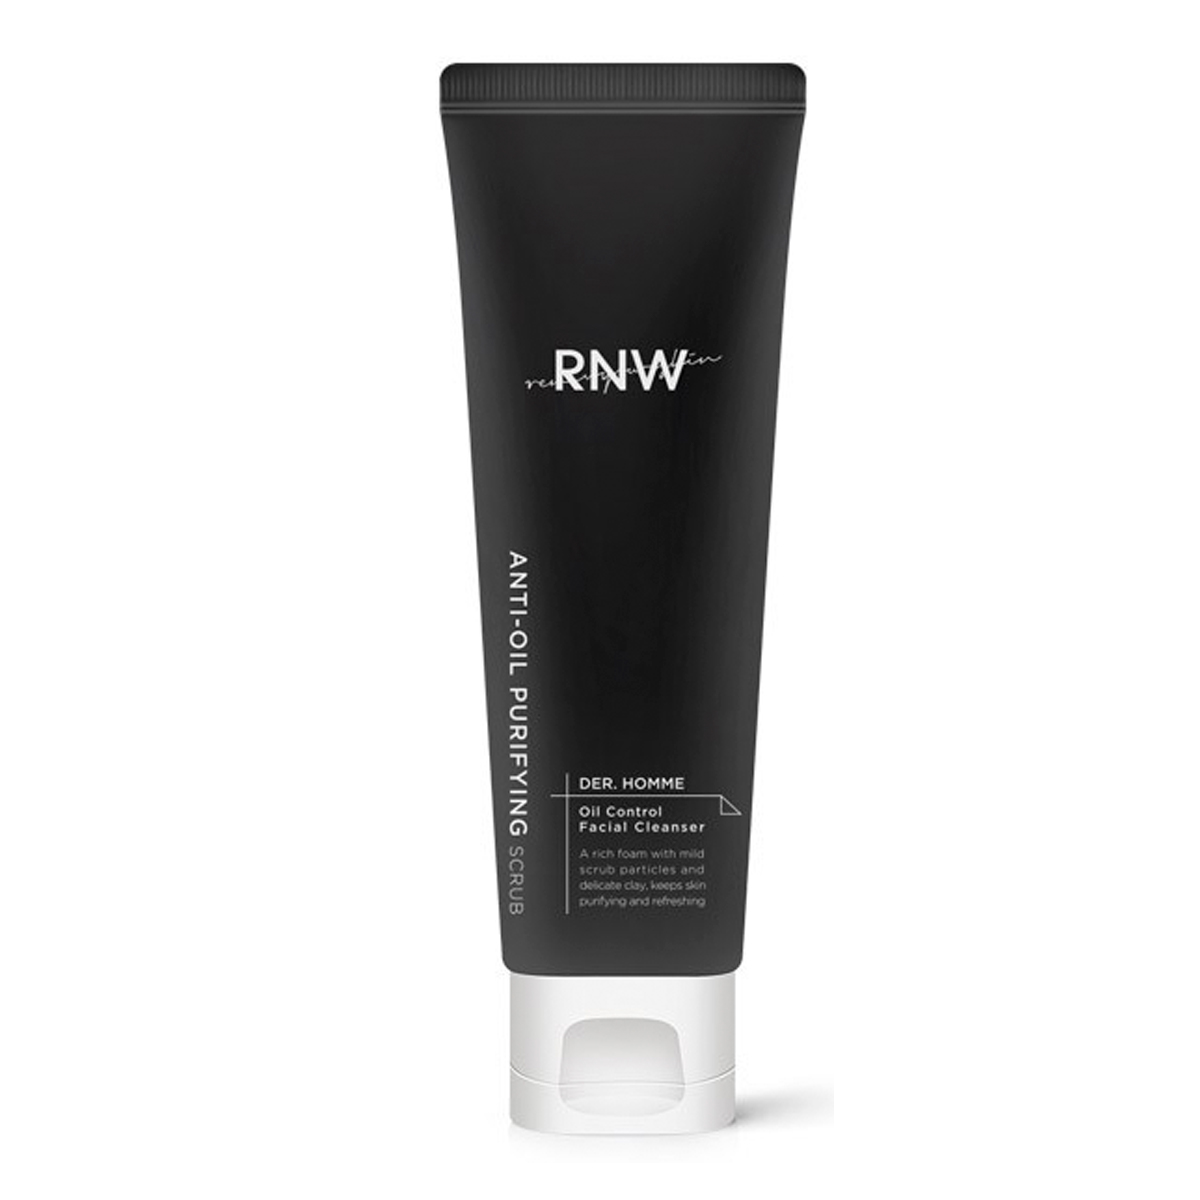 Купить Мужская очищающая пенка для жирной кожи лица RNW Der. Homme Oil Control Facial Cleanser